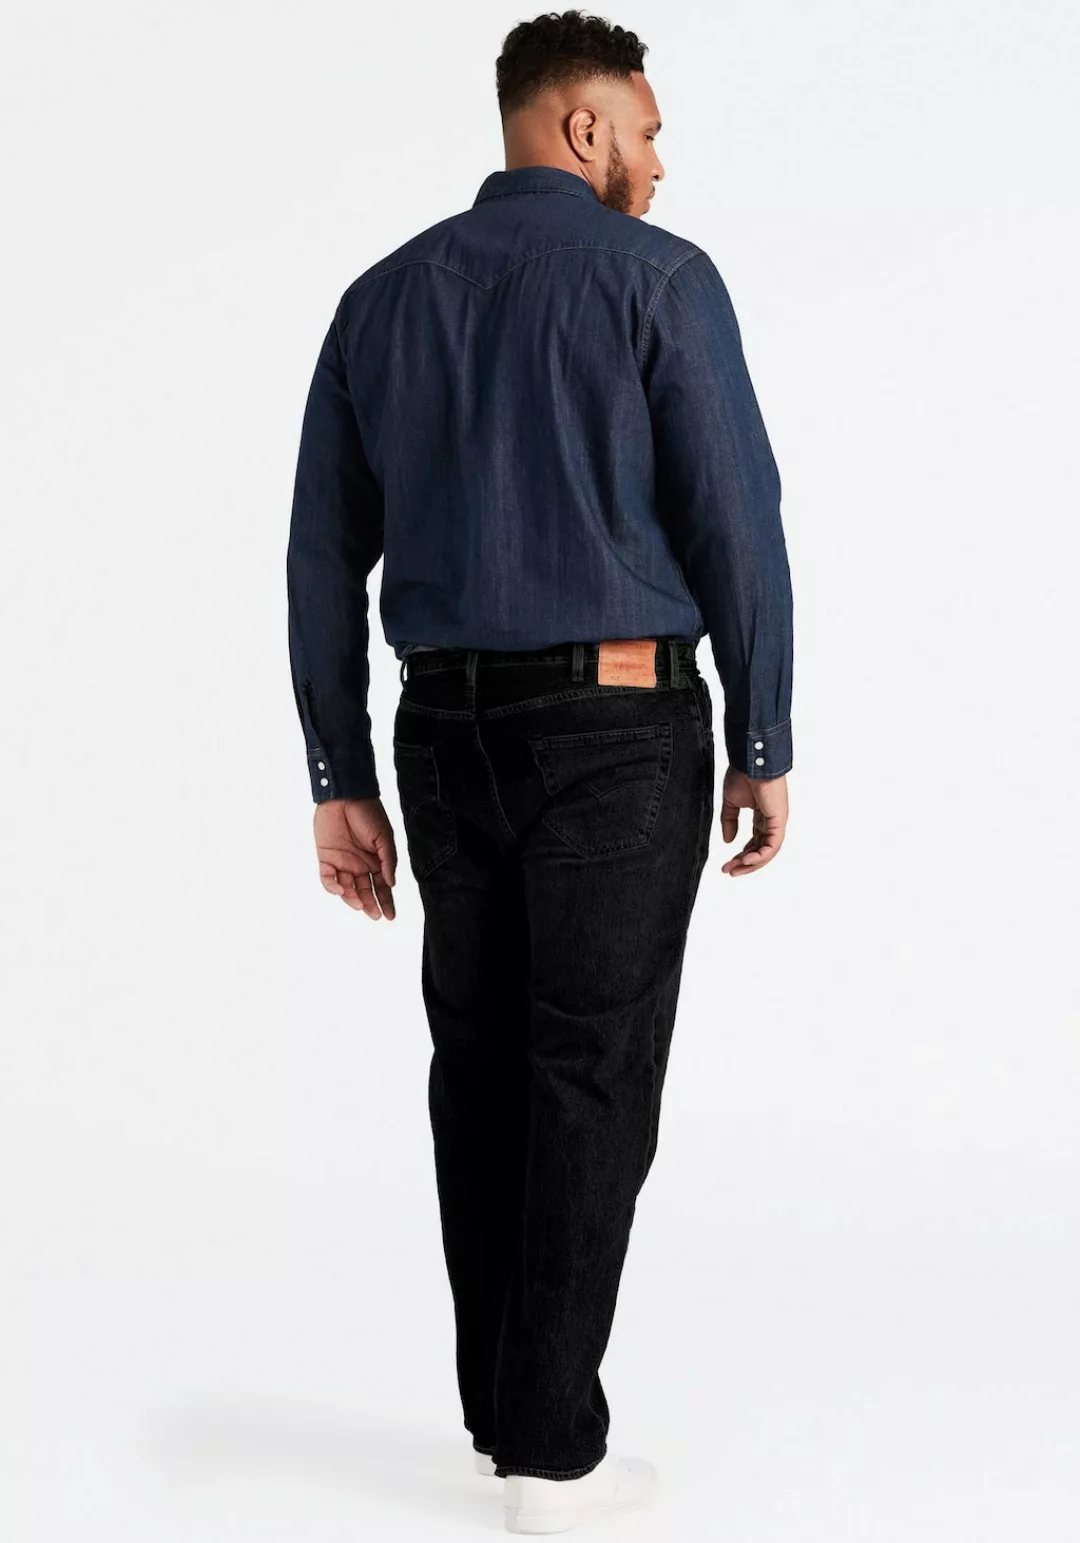 Levis Plus Tapered-fit-Jeans "502 TAPER B&T", für einen lässigen Look günstig online kaufen